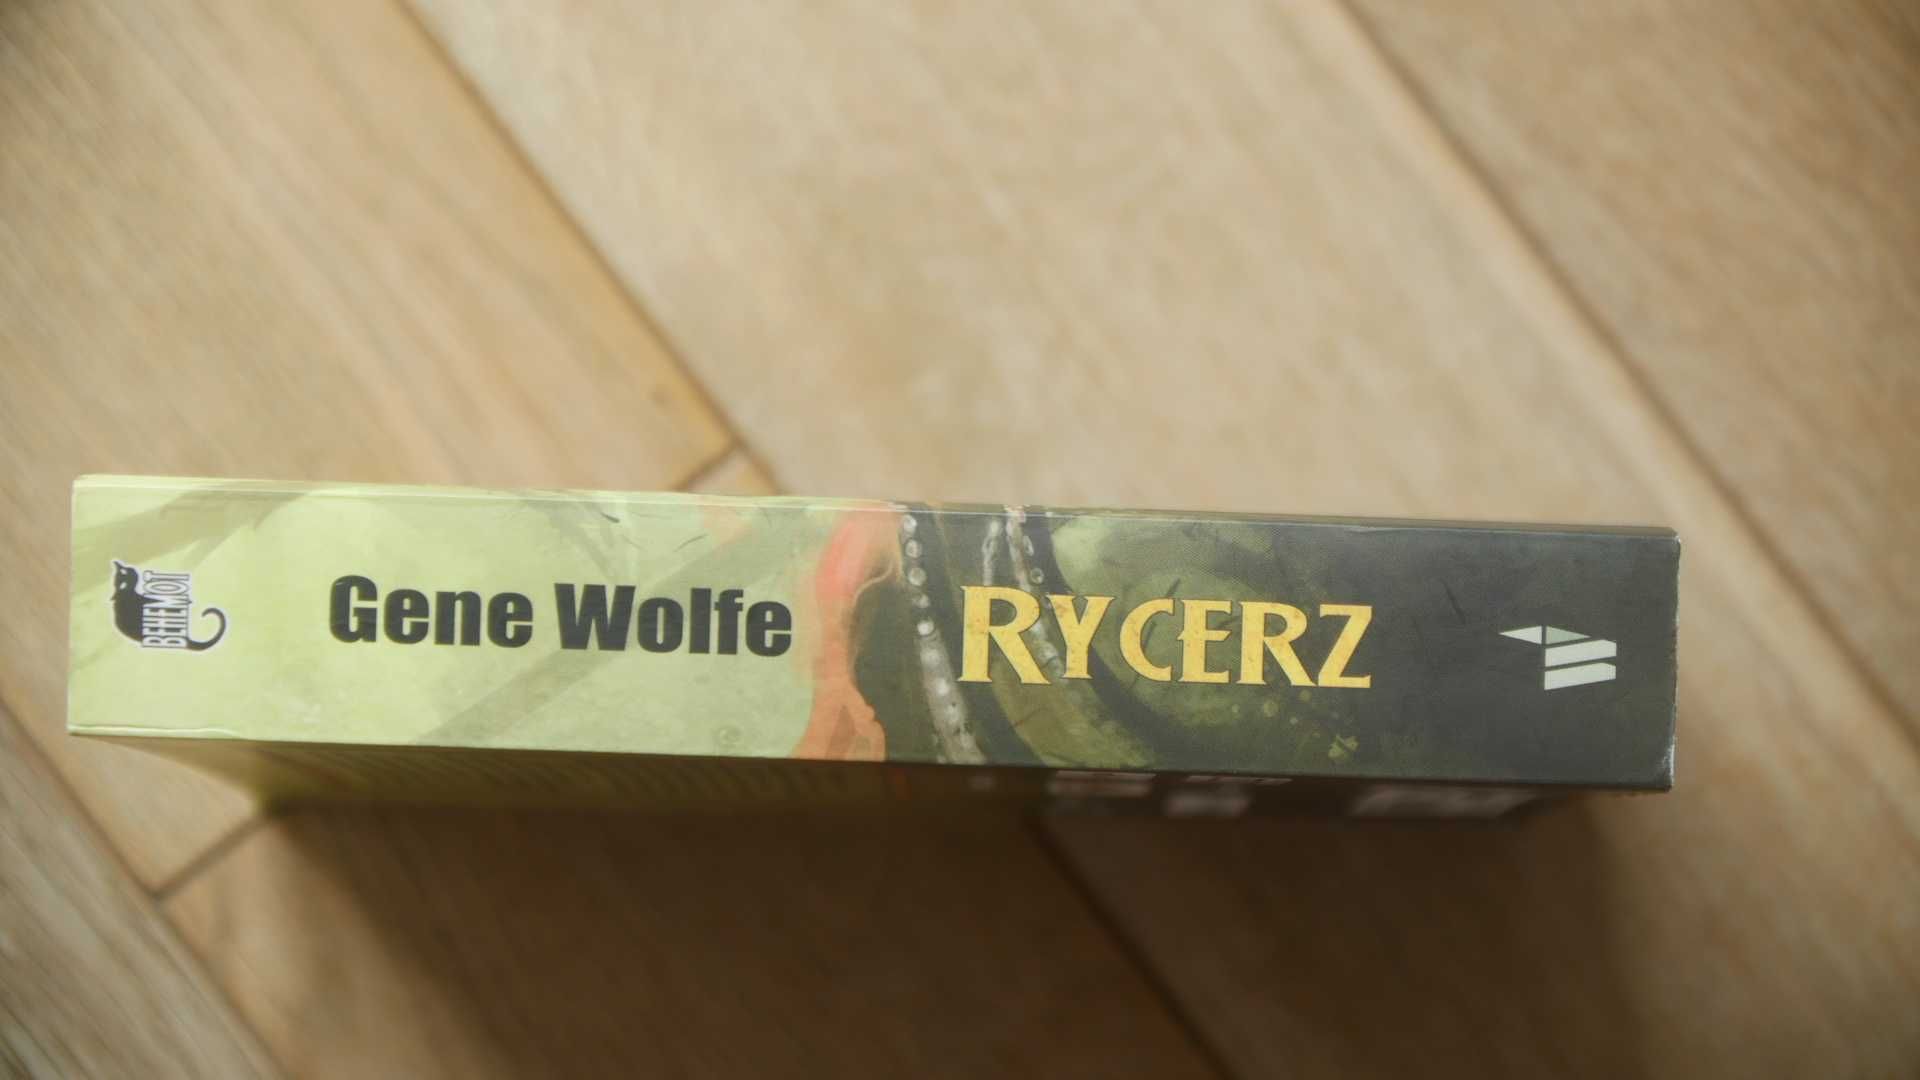 "Rycerz" - Gene Wolfe